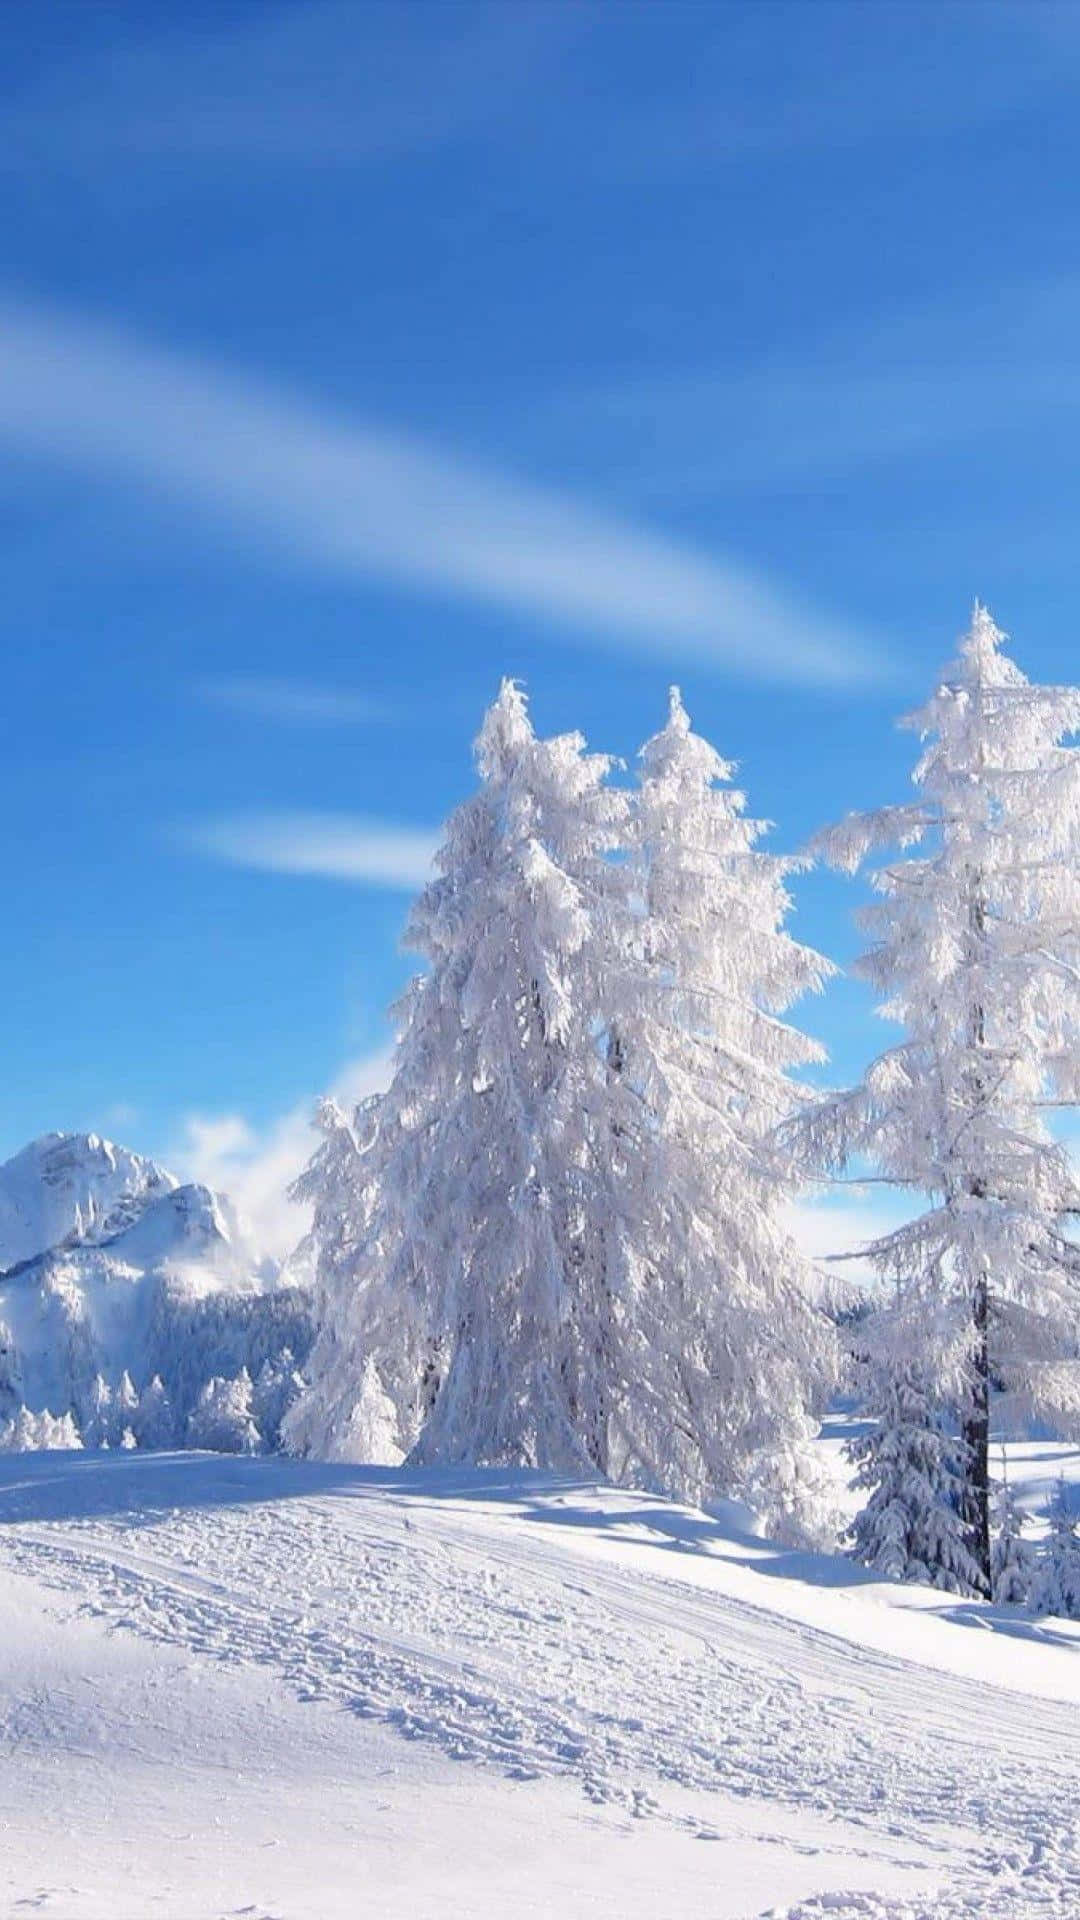 Snöigaträd I Den Snöiga Landsbygden. Wallpaper